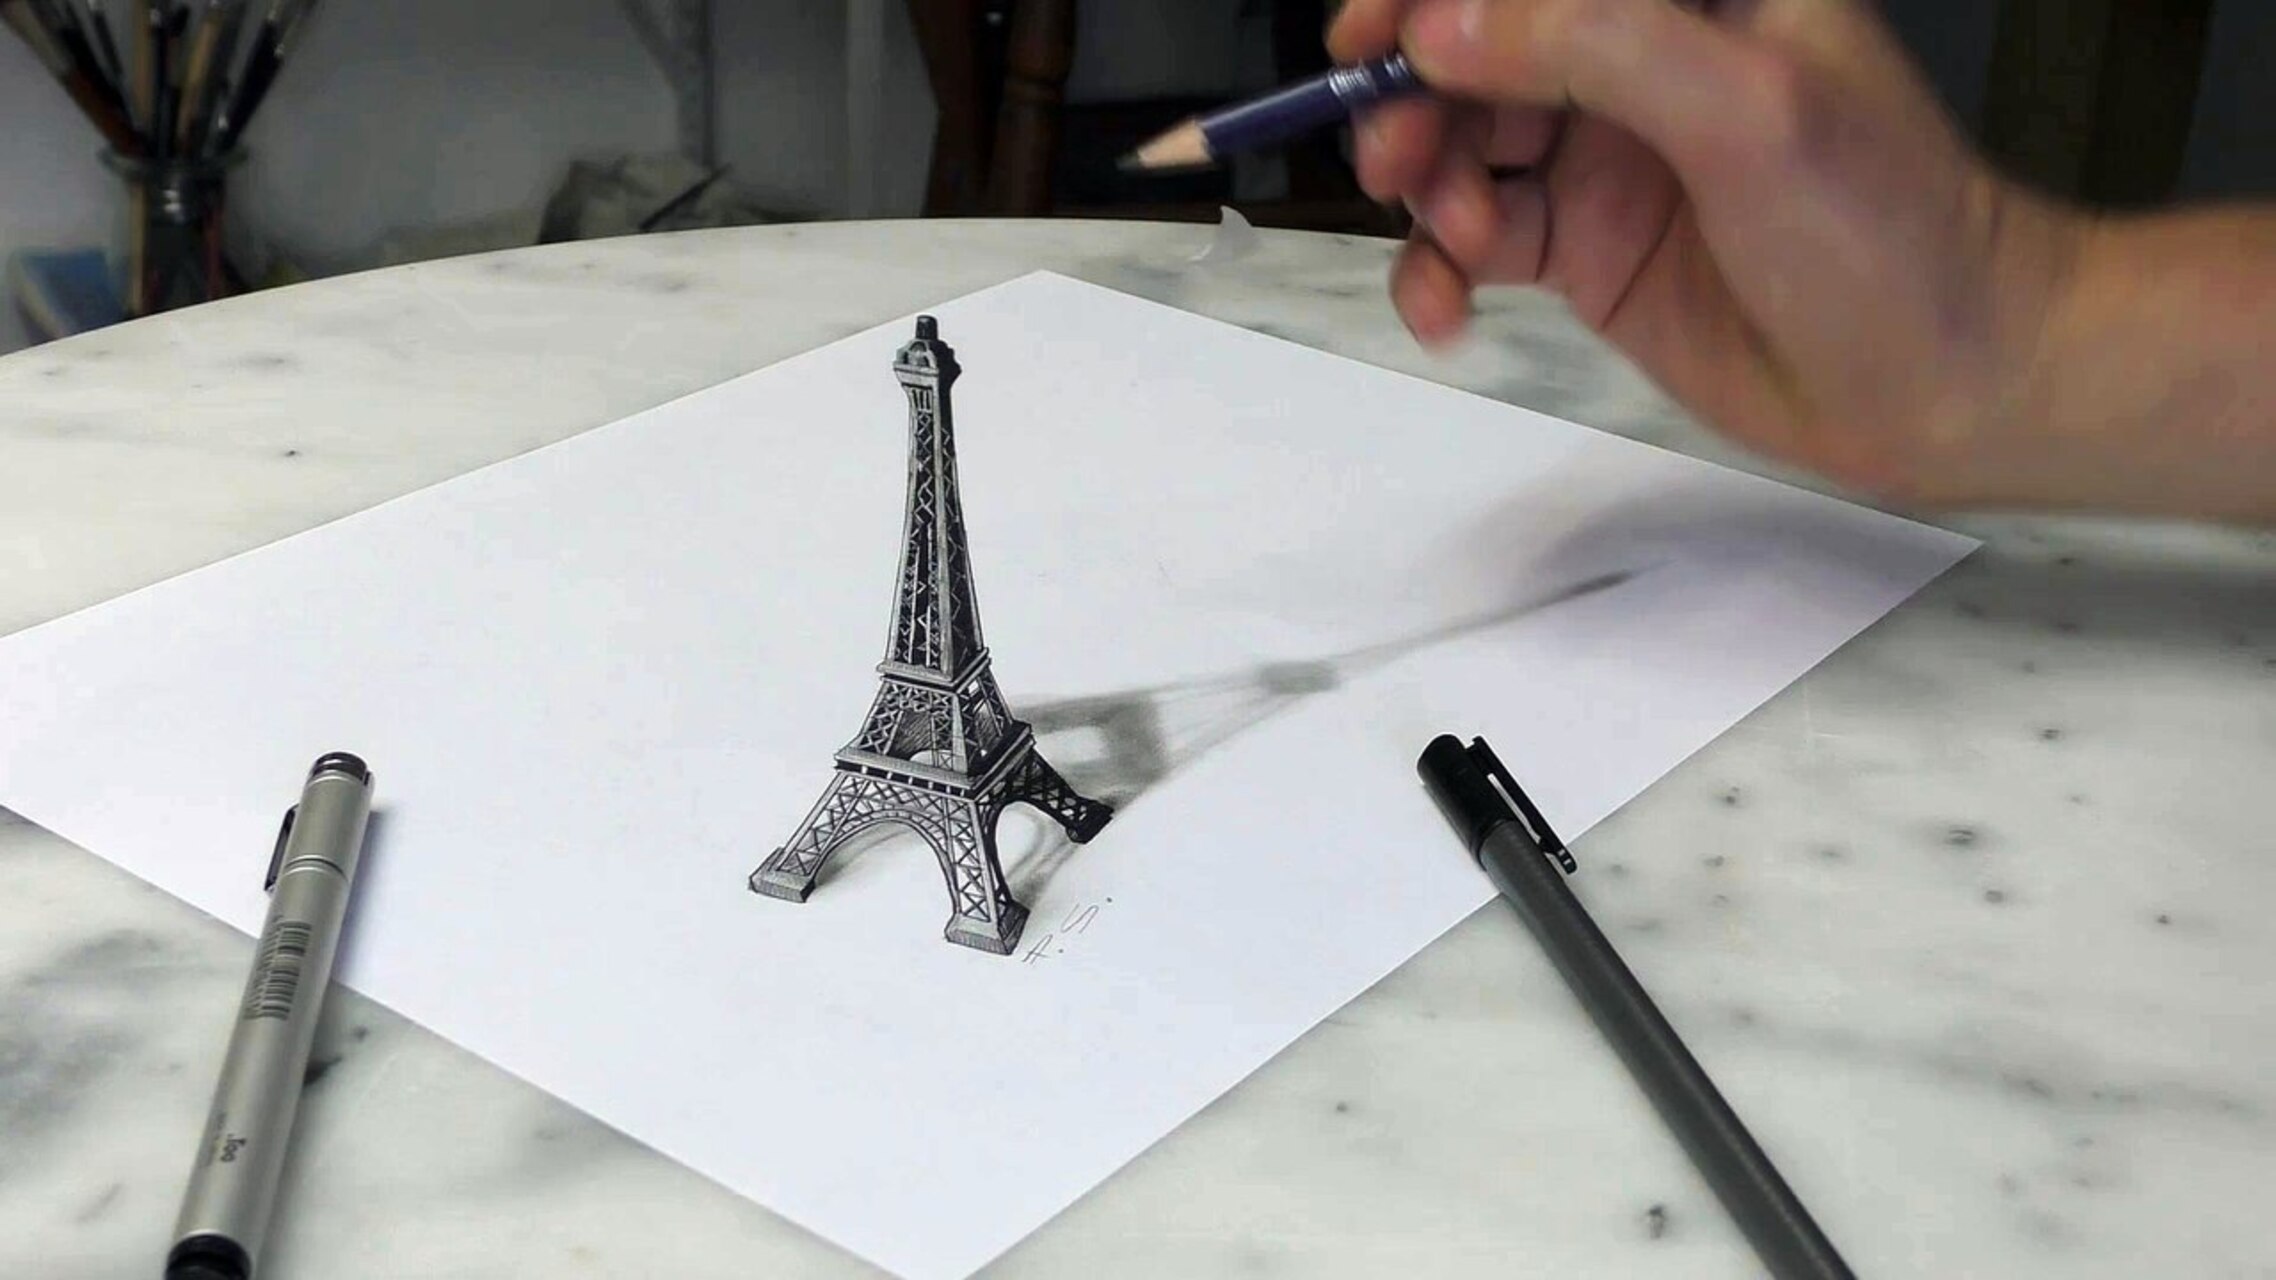 vẽ hình 3D đơn giản mà ai cũng có thể thực hiện  happy origami 4  YouTube